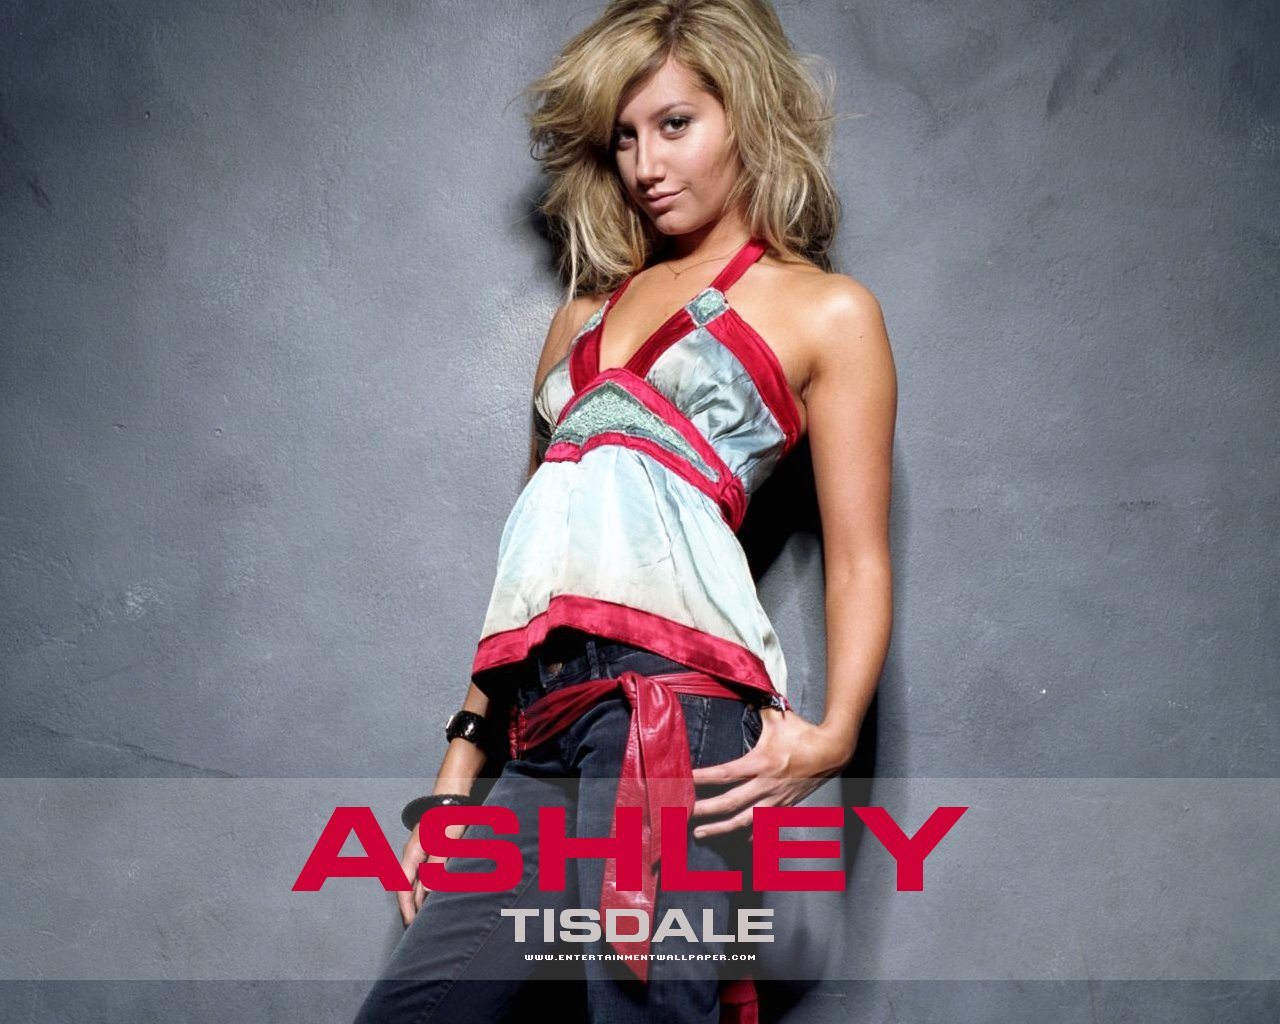 Ashley Tisdale - Ashley Tisdale Wallpaper (948351) - Fanpop